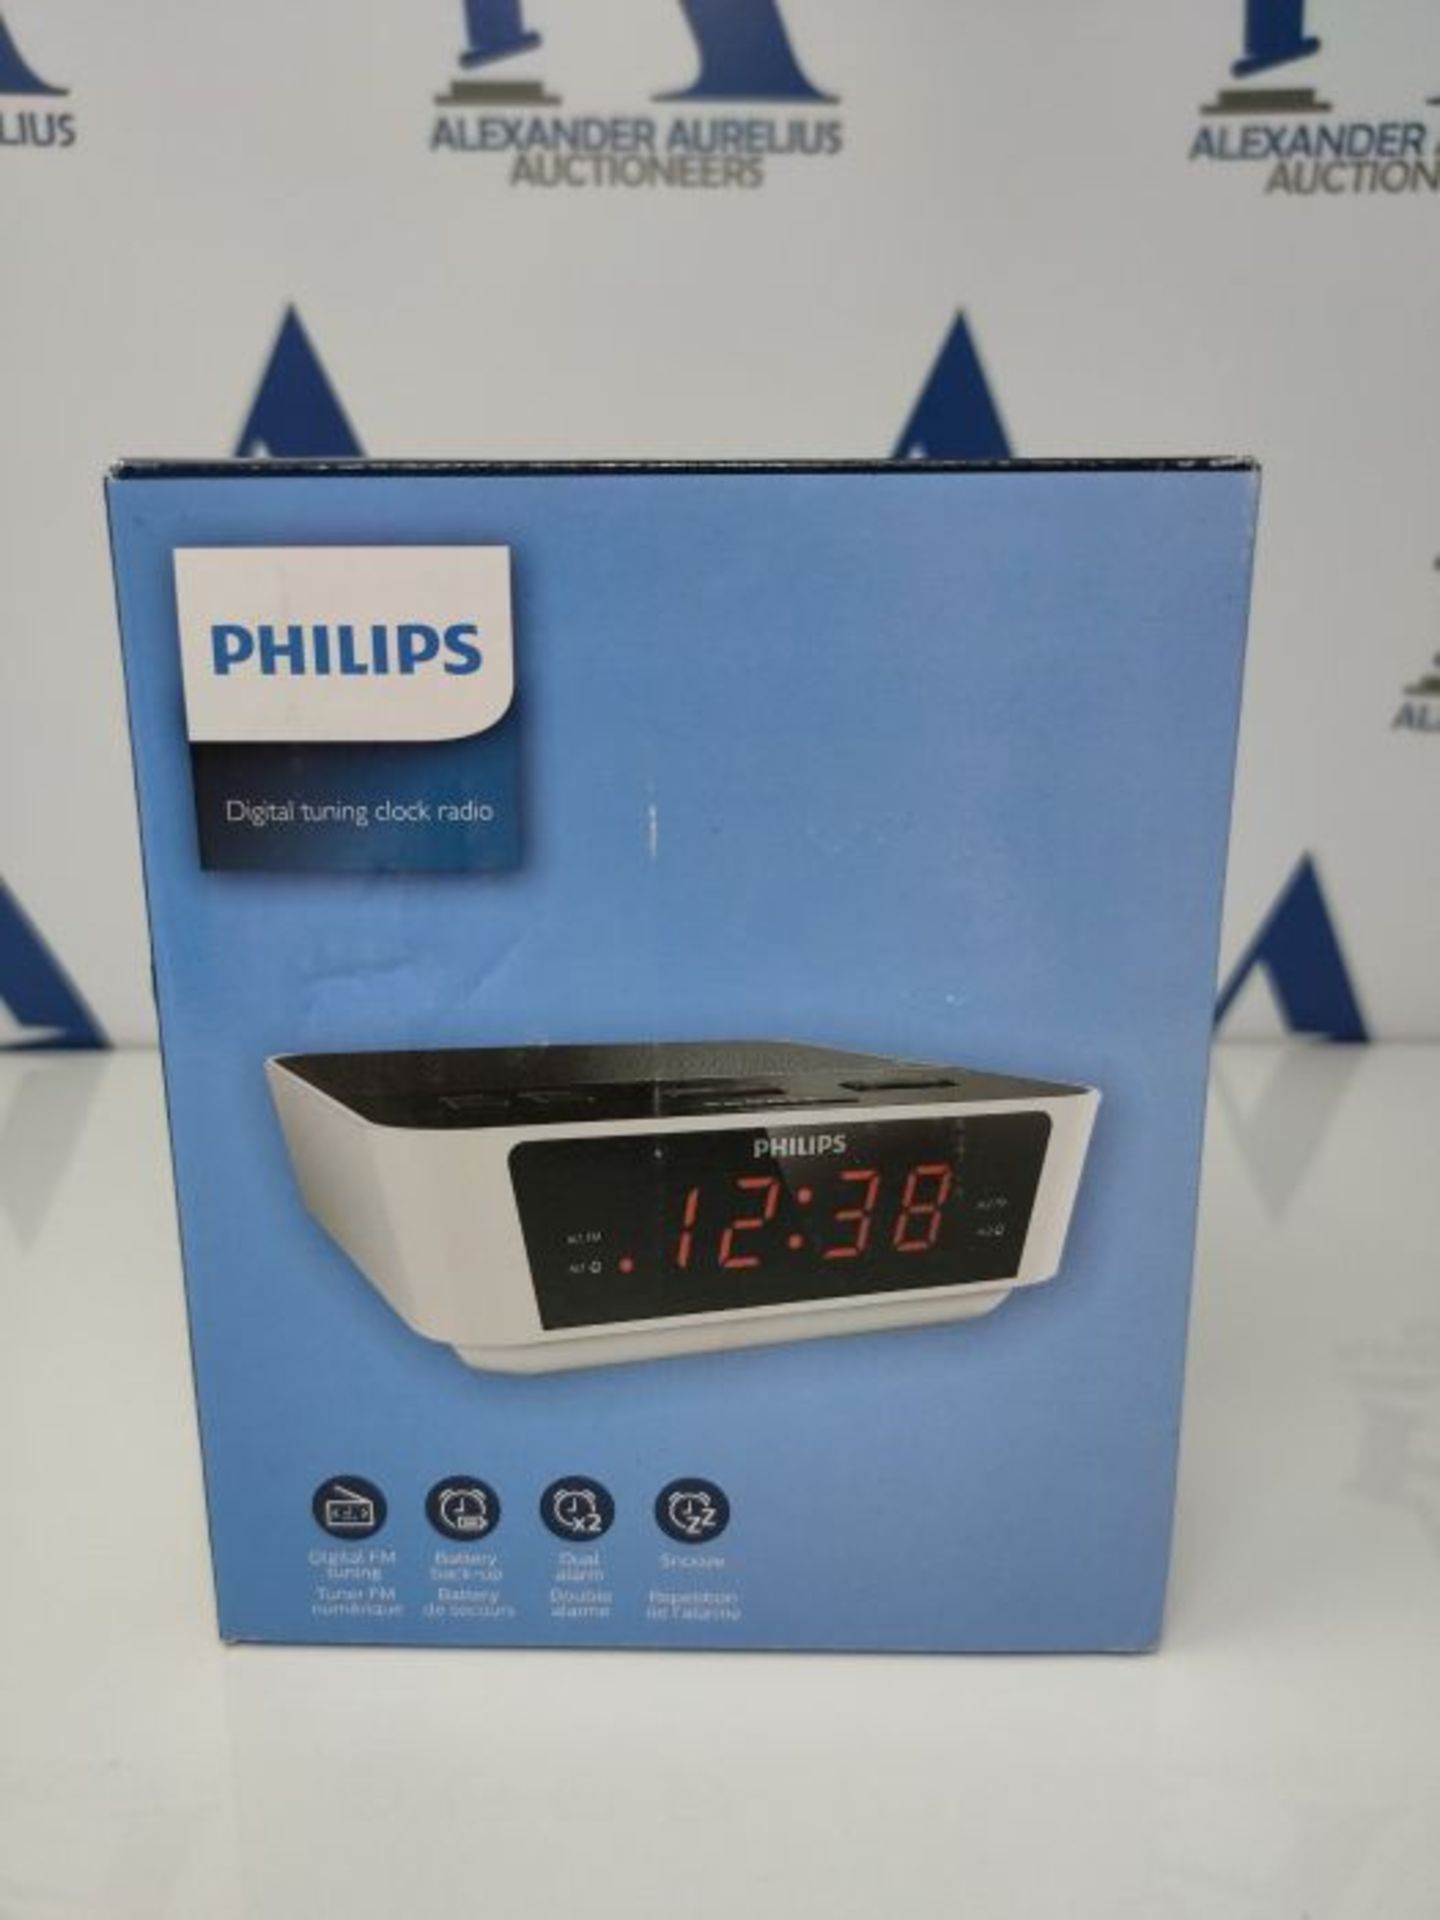 Philips UKW Radioalarm clock AJ3115 UKW white, black - Image 2 of 3